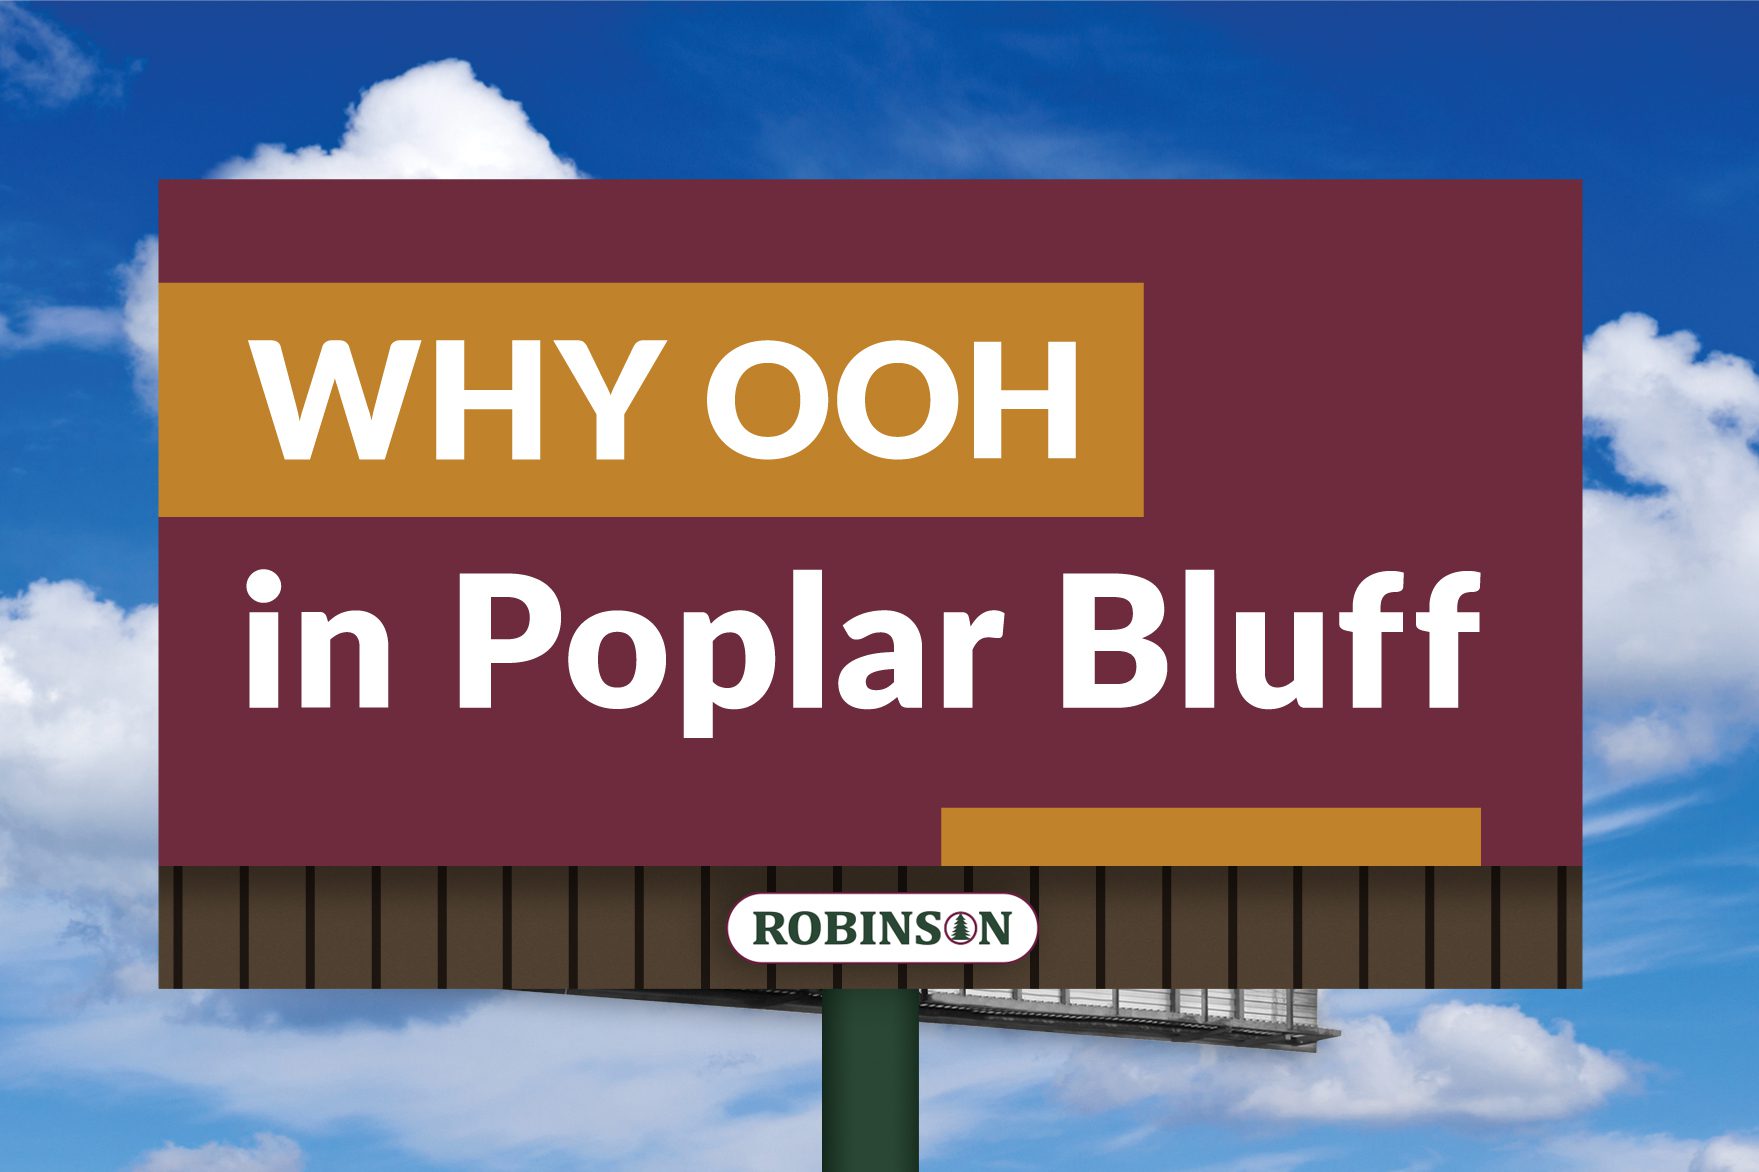 Poplar Bluff, Missouri digital billboard advertising